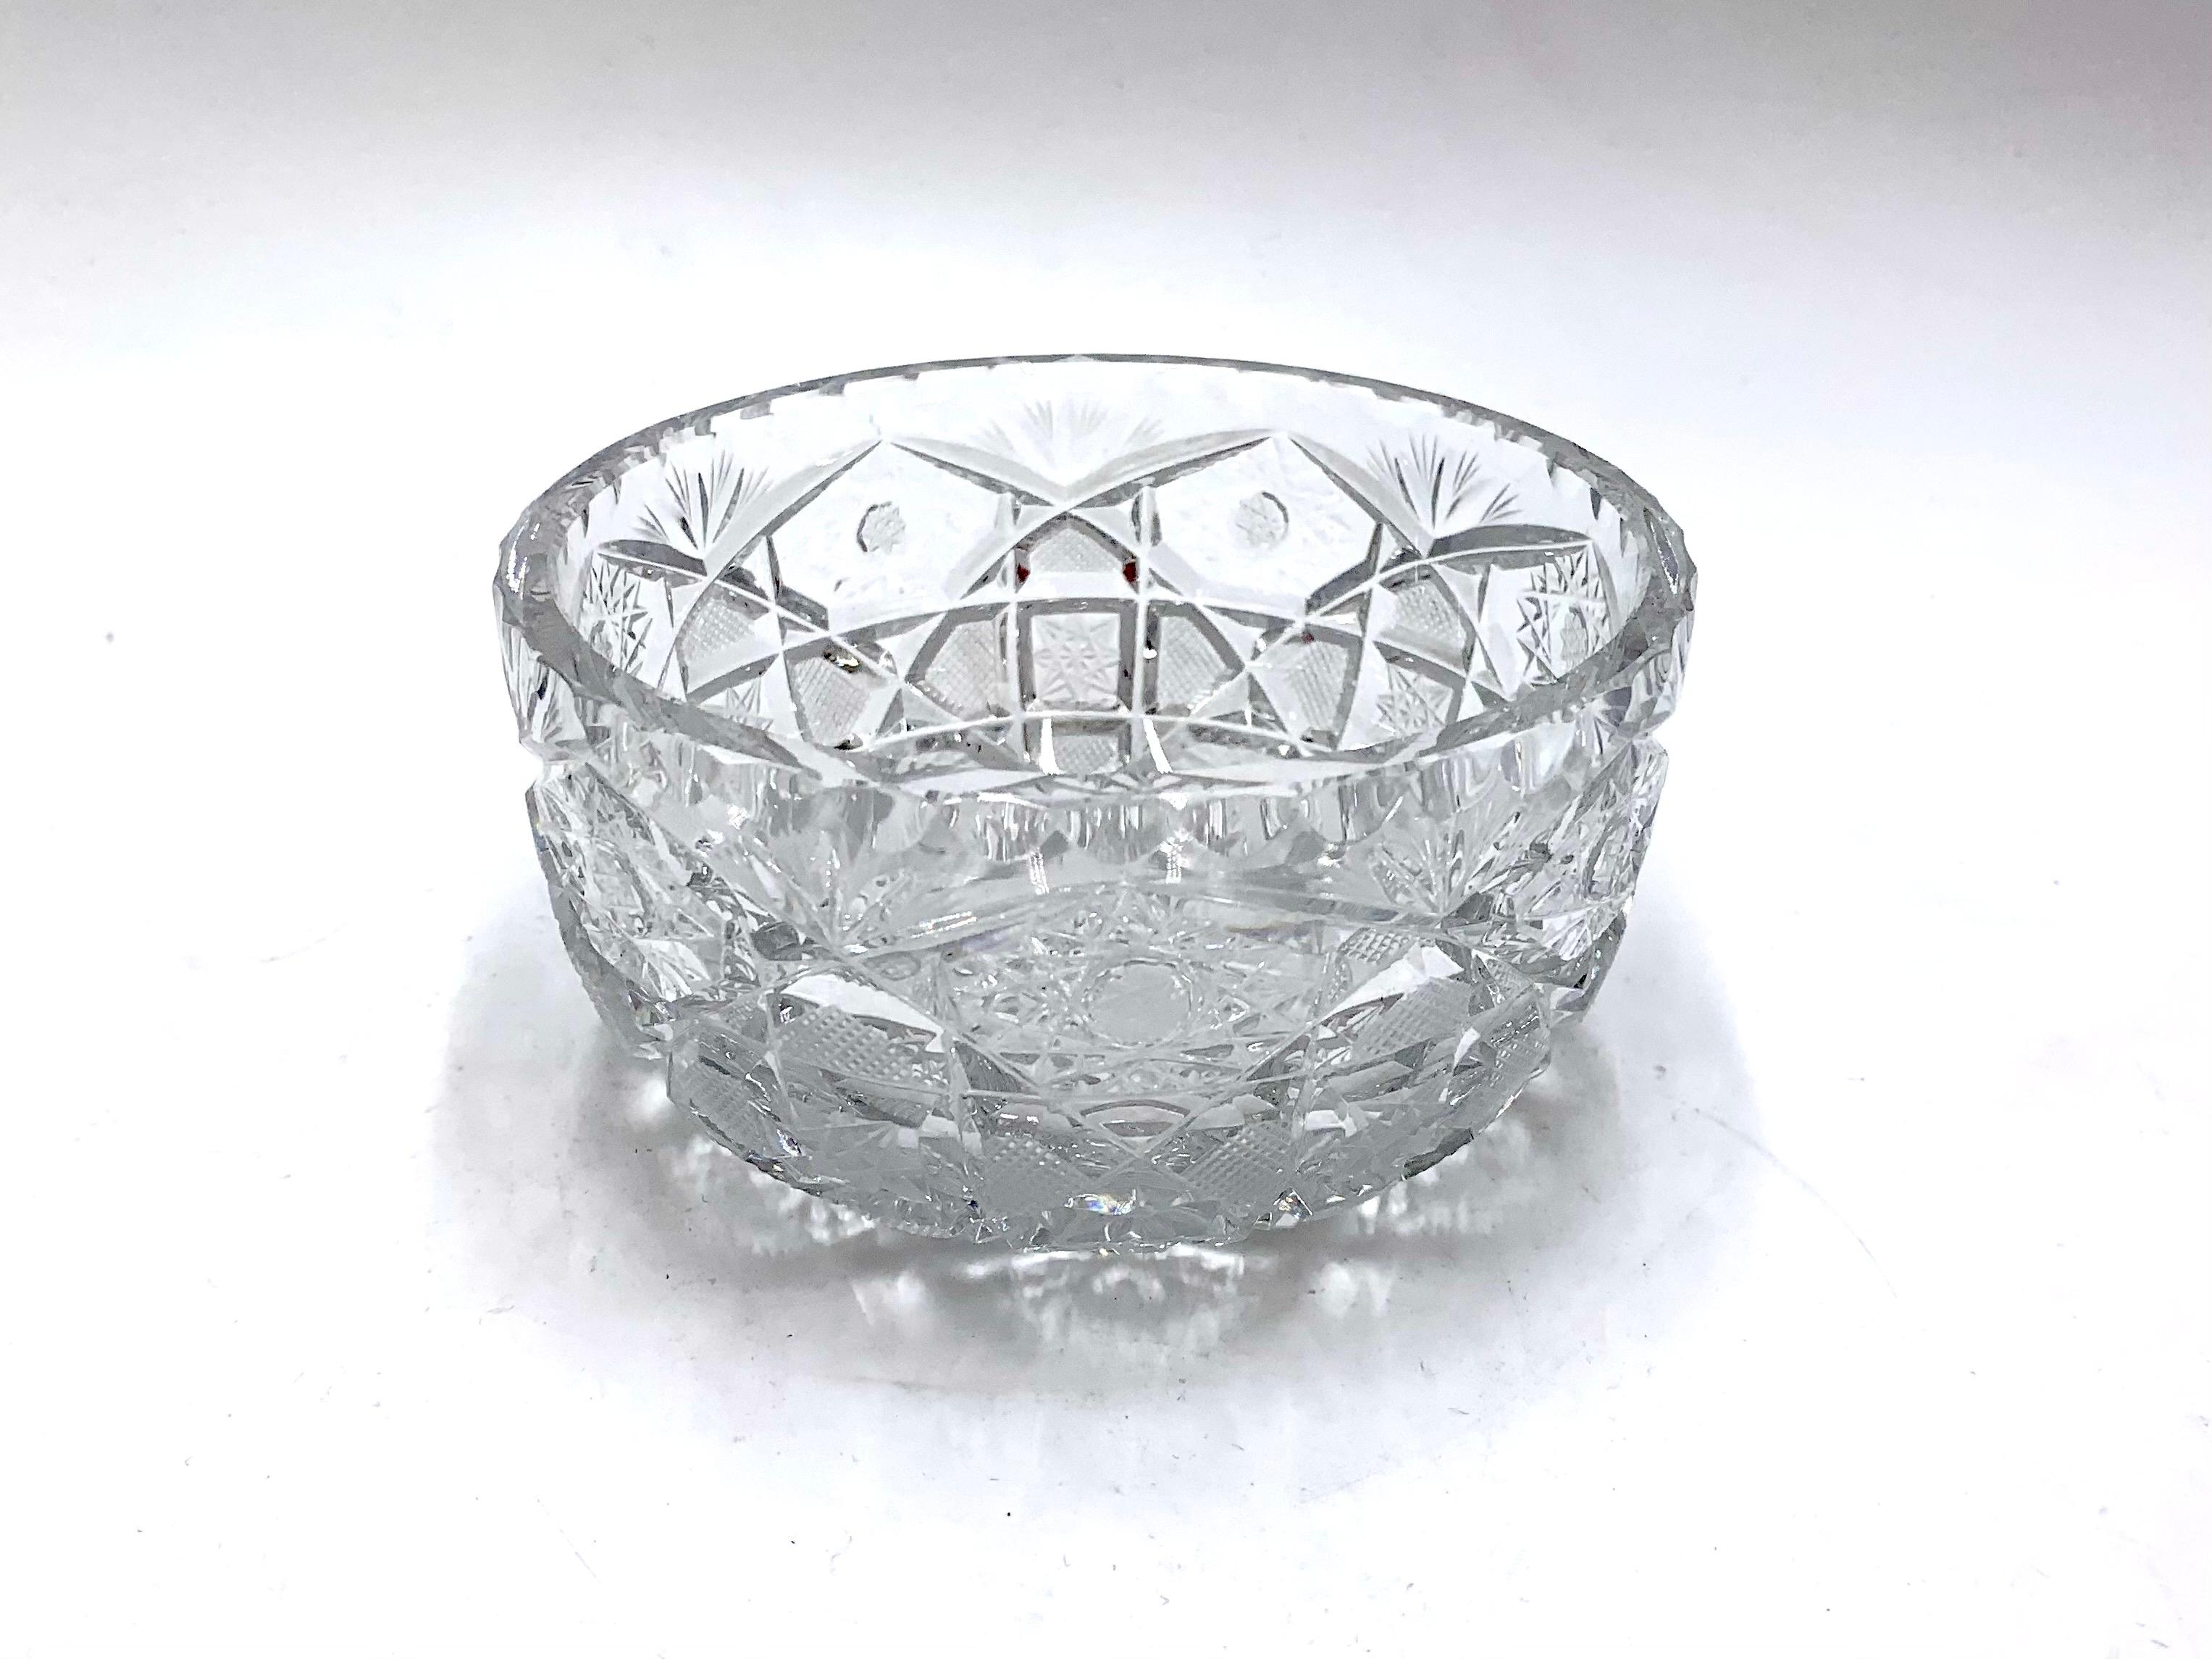 Kristallschale - Teller für Süßigkeiten.
Hergestellt in Polen in den 1950er/1960er Jahren.
Sehr guter Zustand.
Abmessungen: Höhe 6 cm, Durchmesser 12 cm.